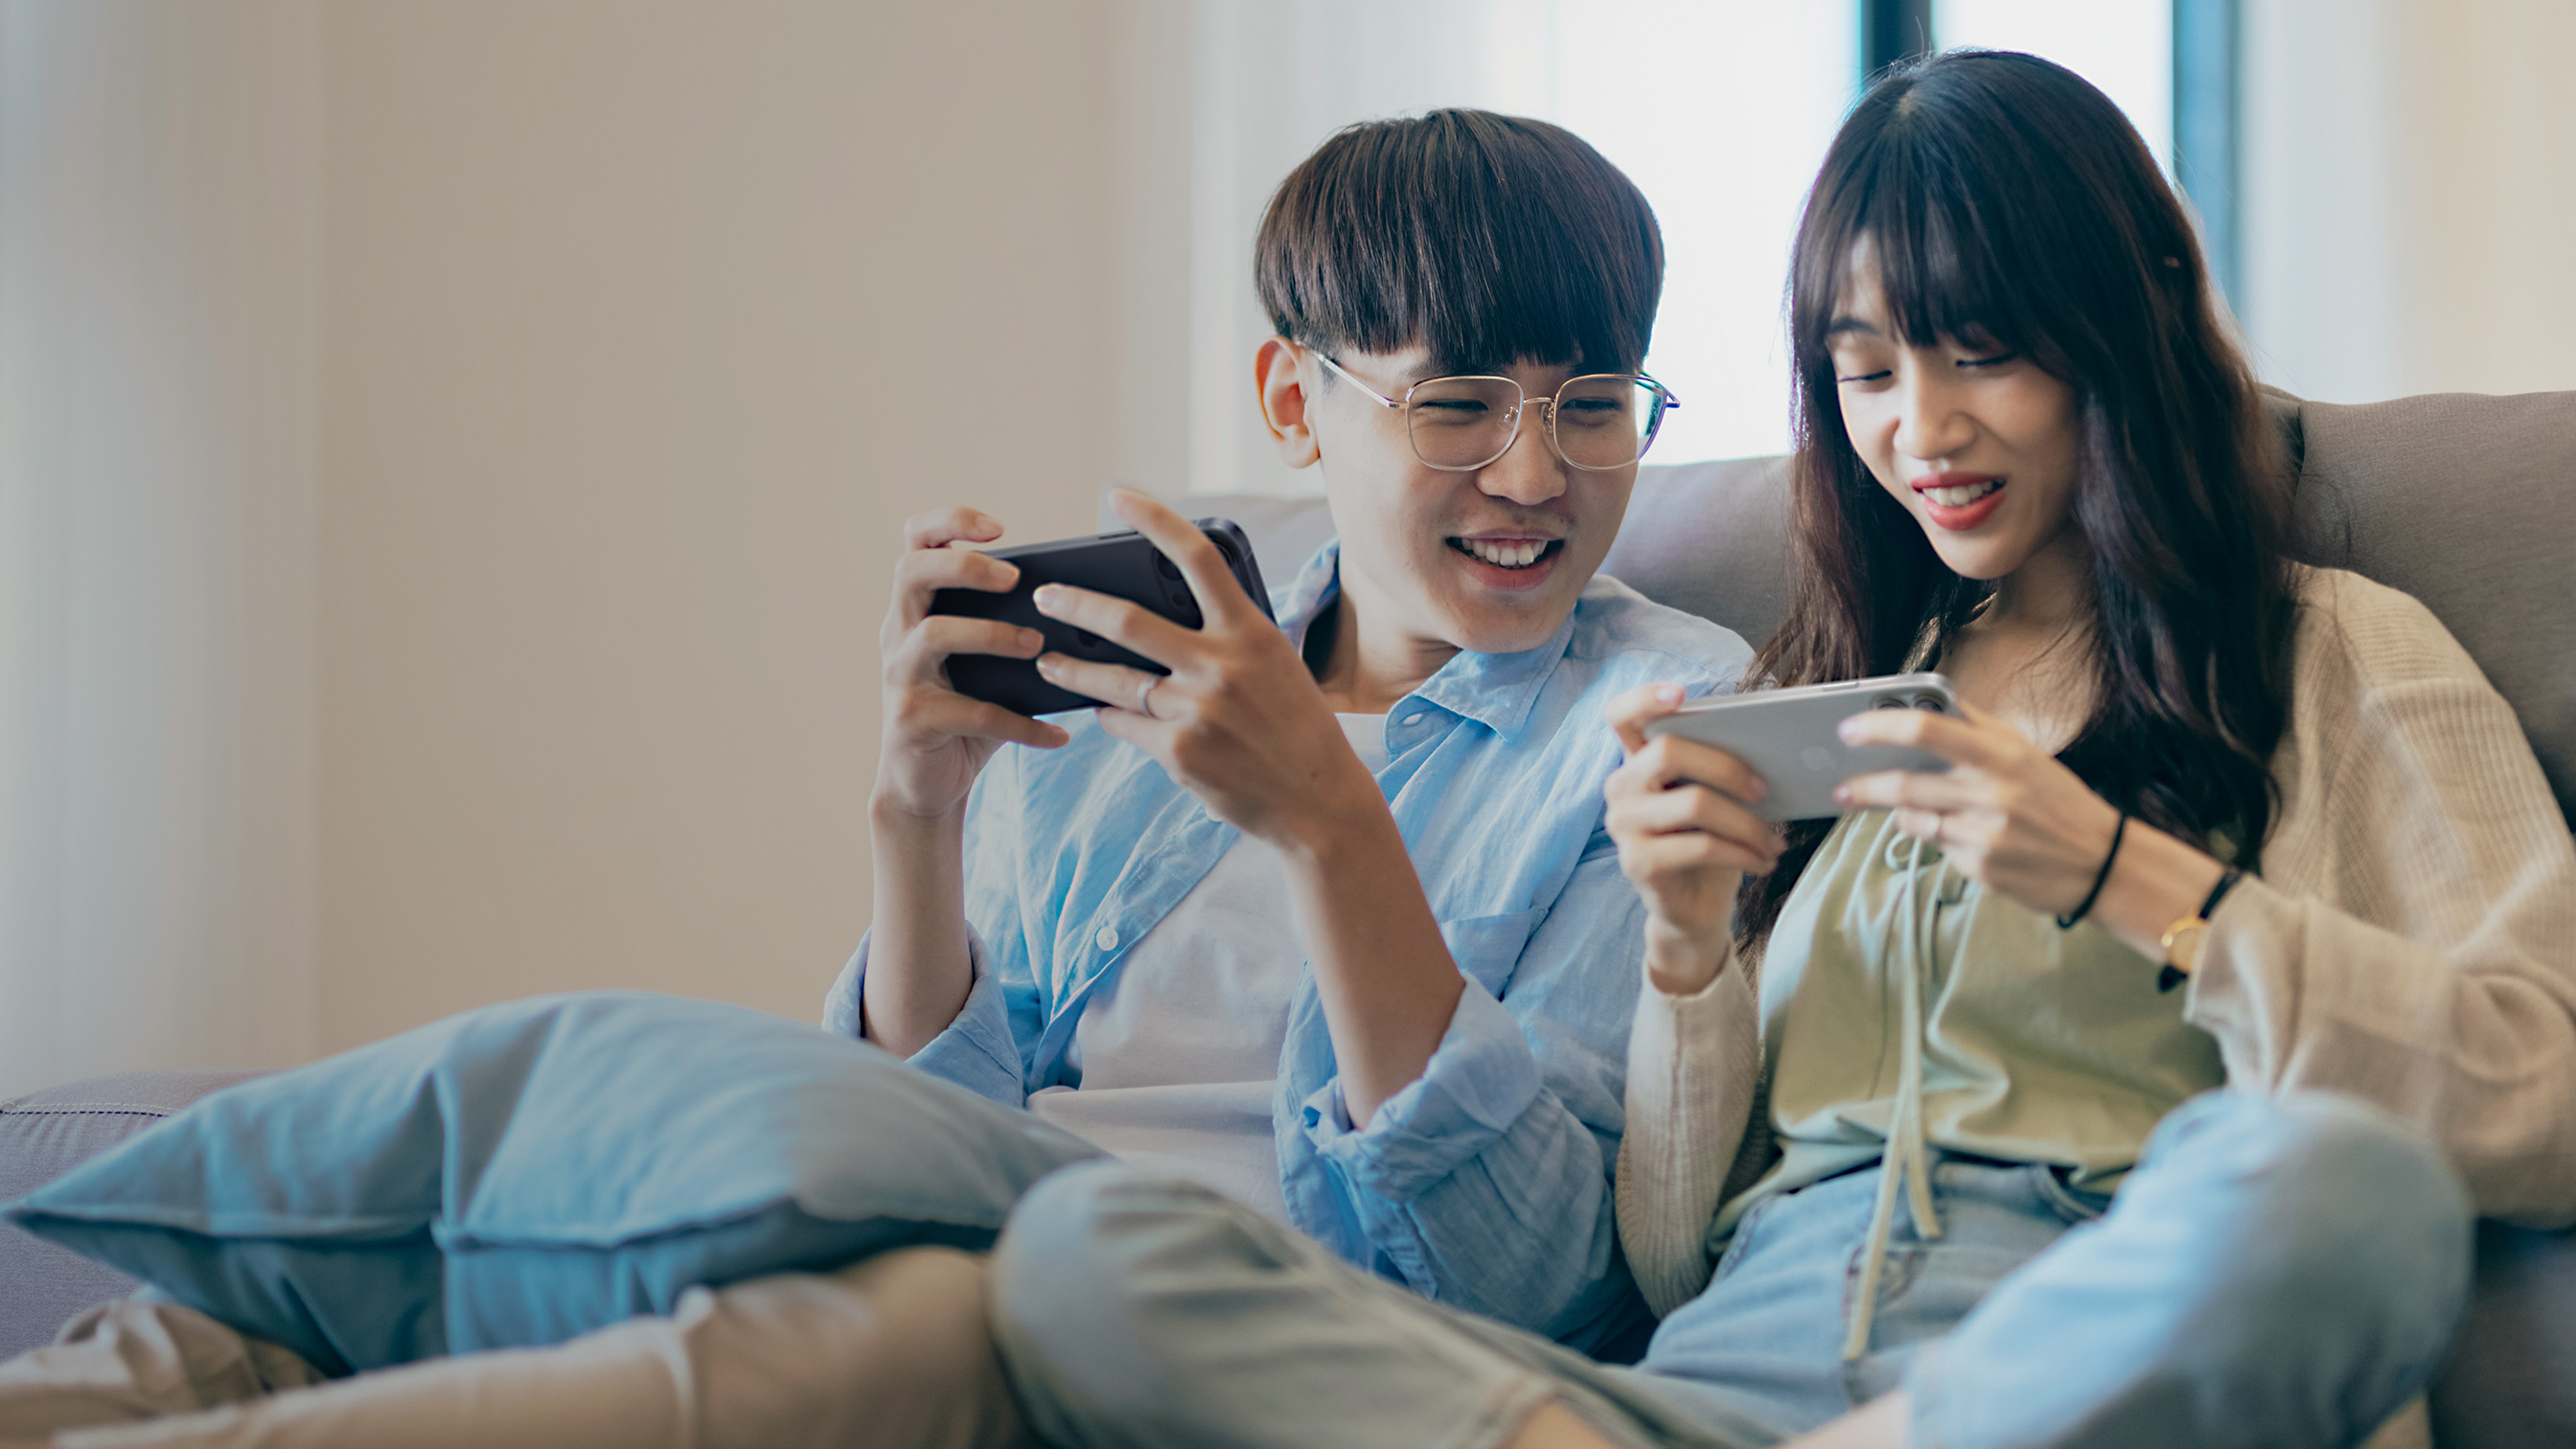 Zwei Personen sitzen auf einer Couch und spielen Spiele auf ihren iPhones.